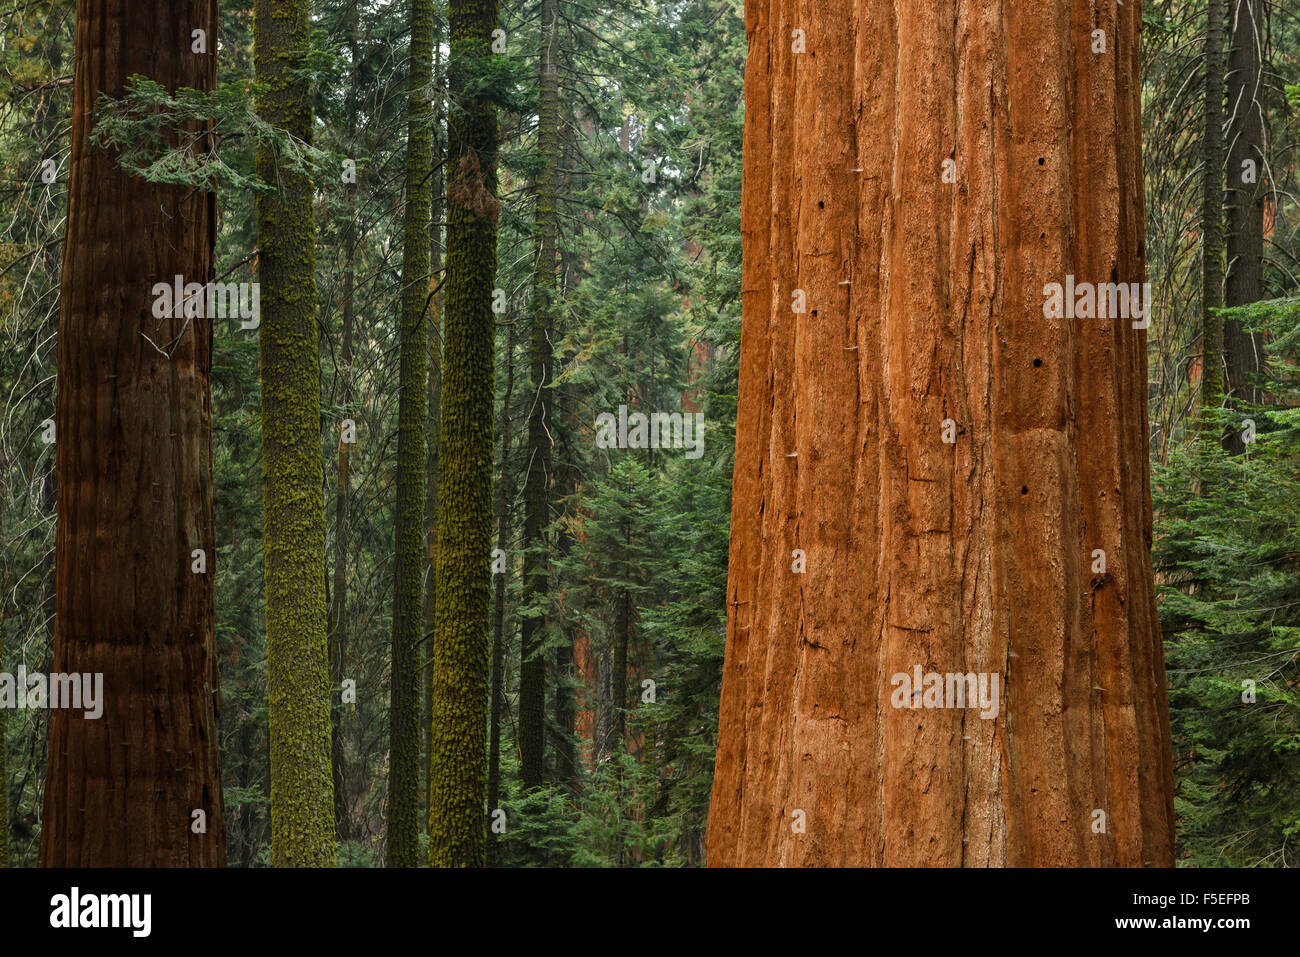 Giant sequoia trees, Sequoia National Park, California, USA Stock Photo